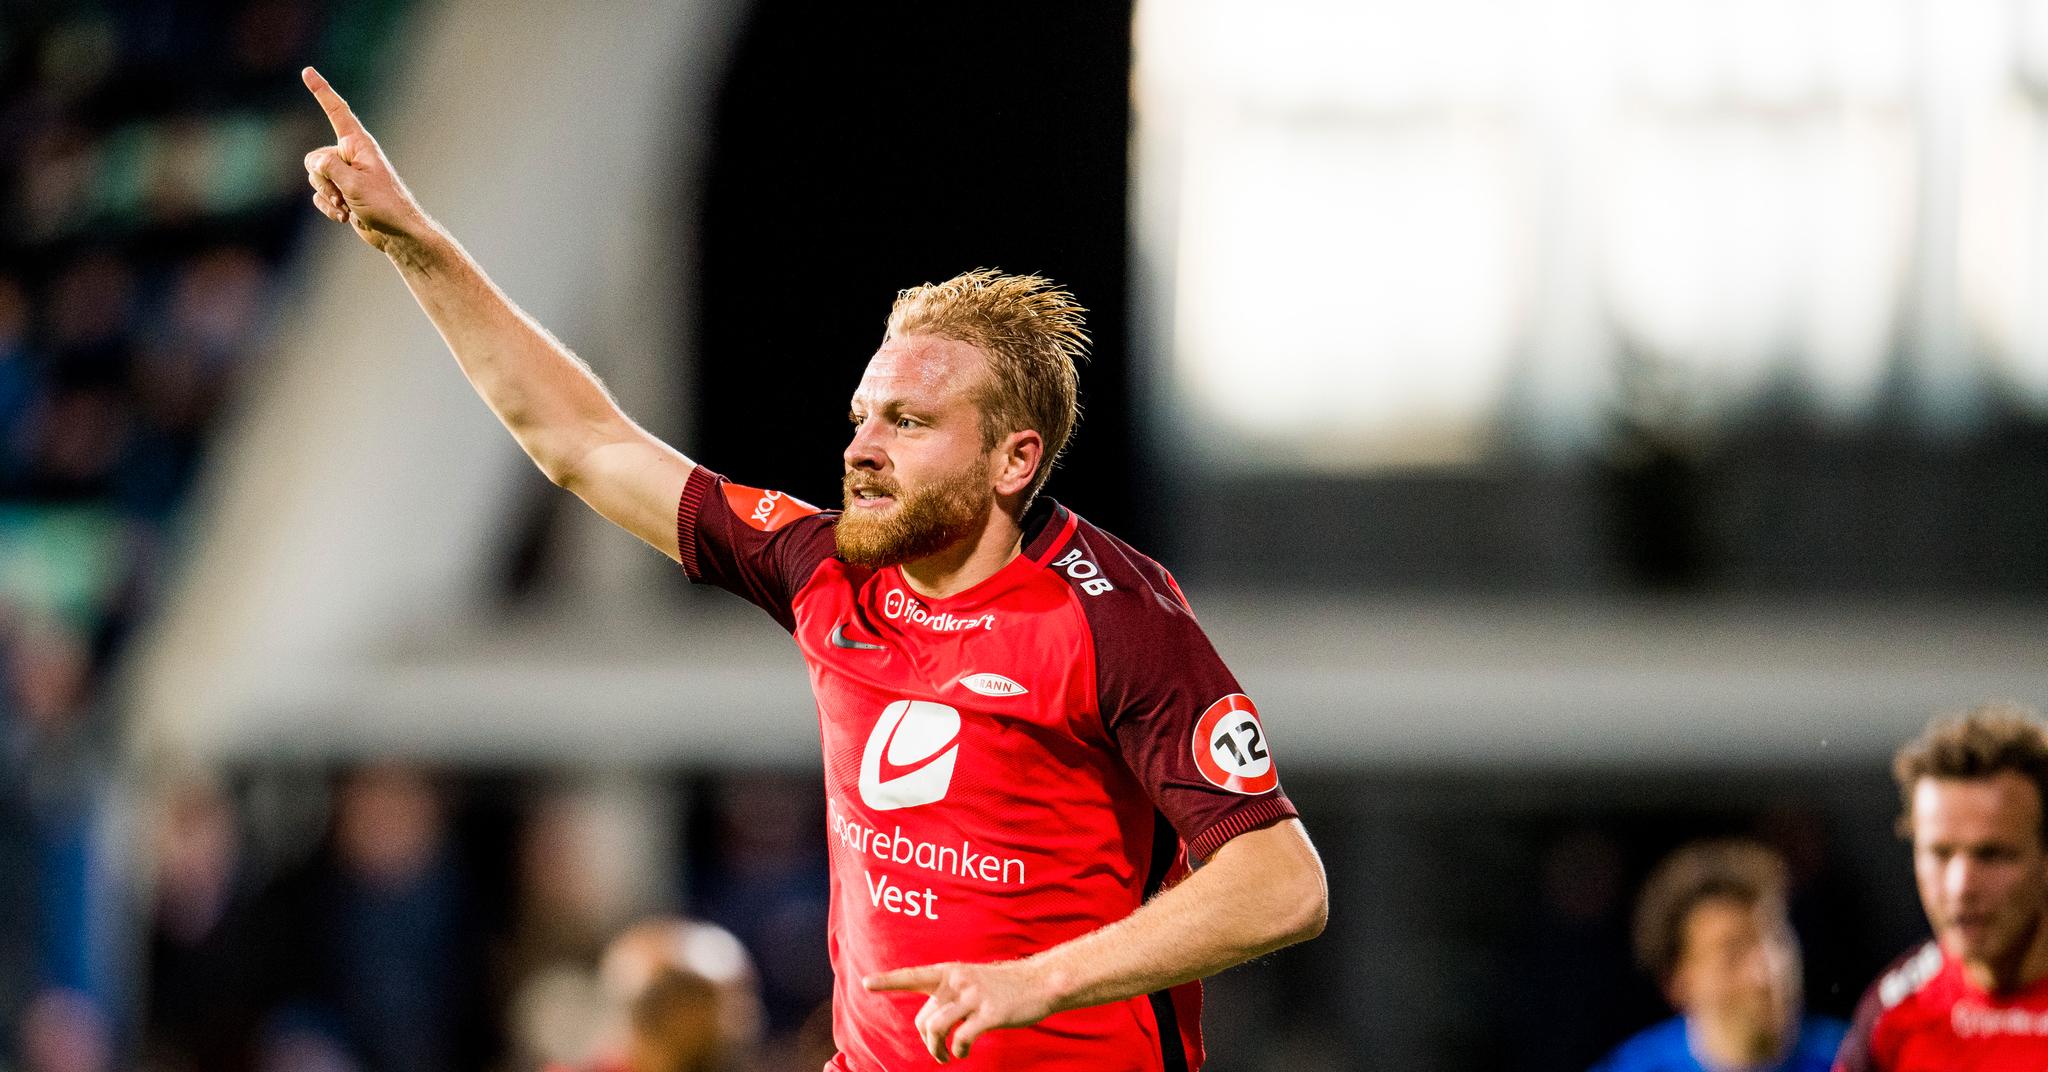 SKIFTER KLUBB: Henrik Kjelsrud Johansen forlater Brann og går til Fredrikstad.